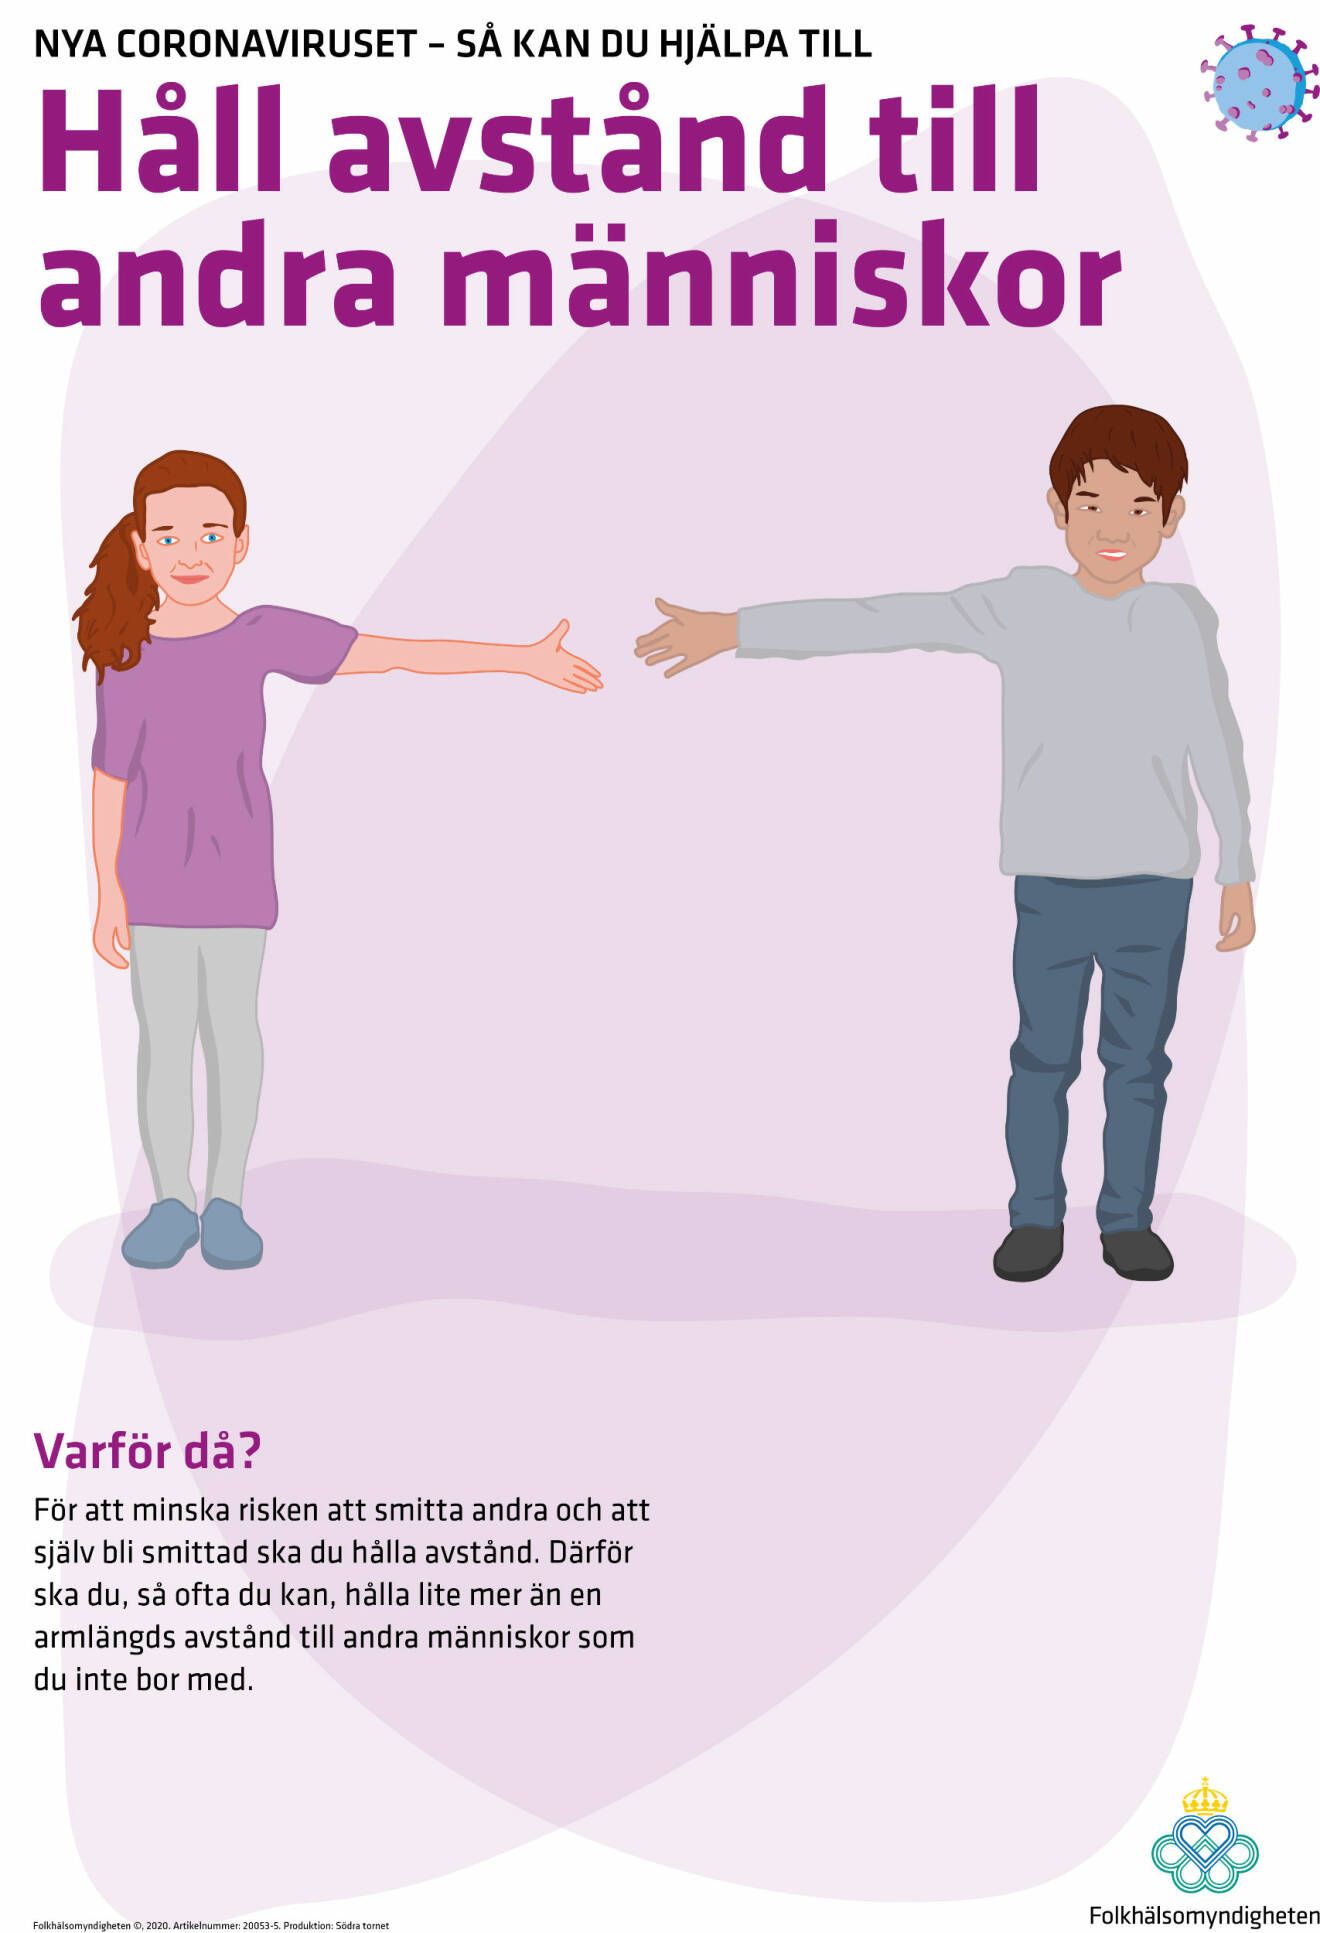 En affisch från Folkhälsomyndigheten där människor uppmanas hålla en armlängds avstånd.